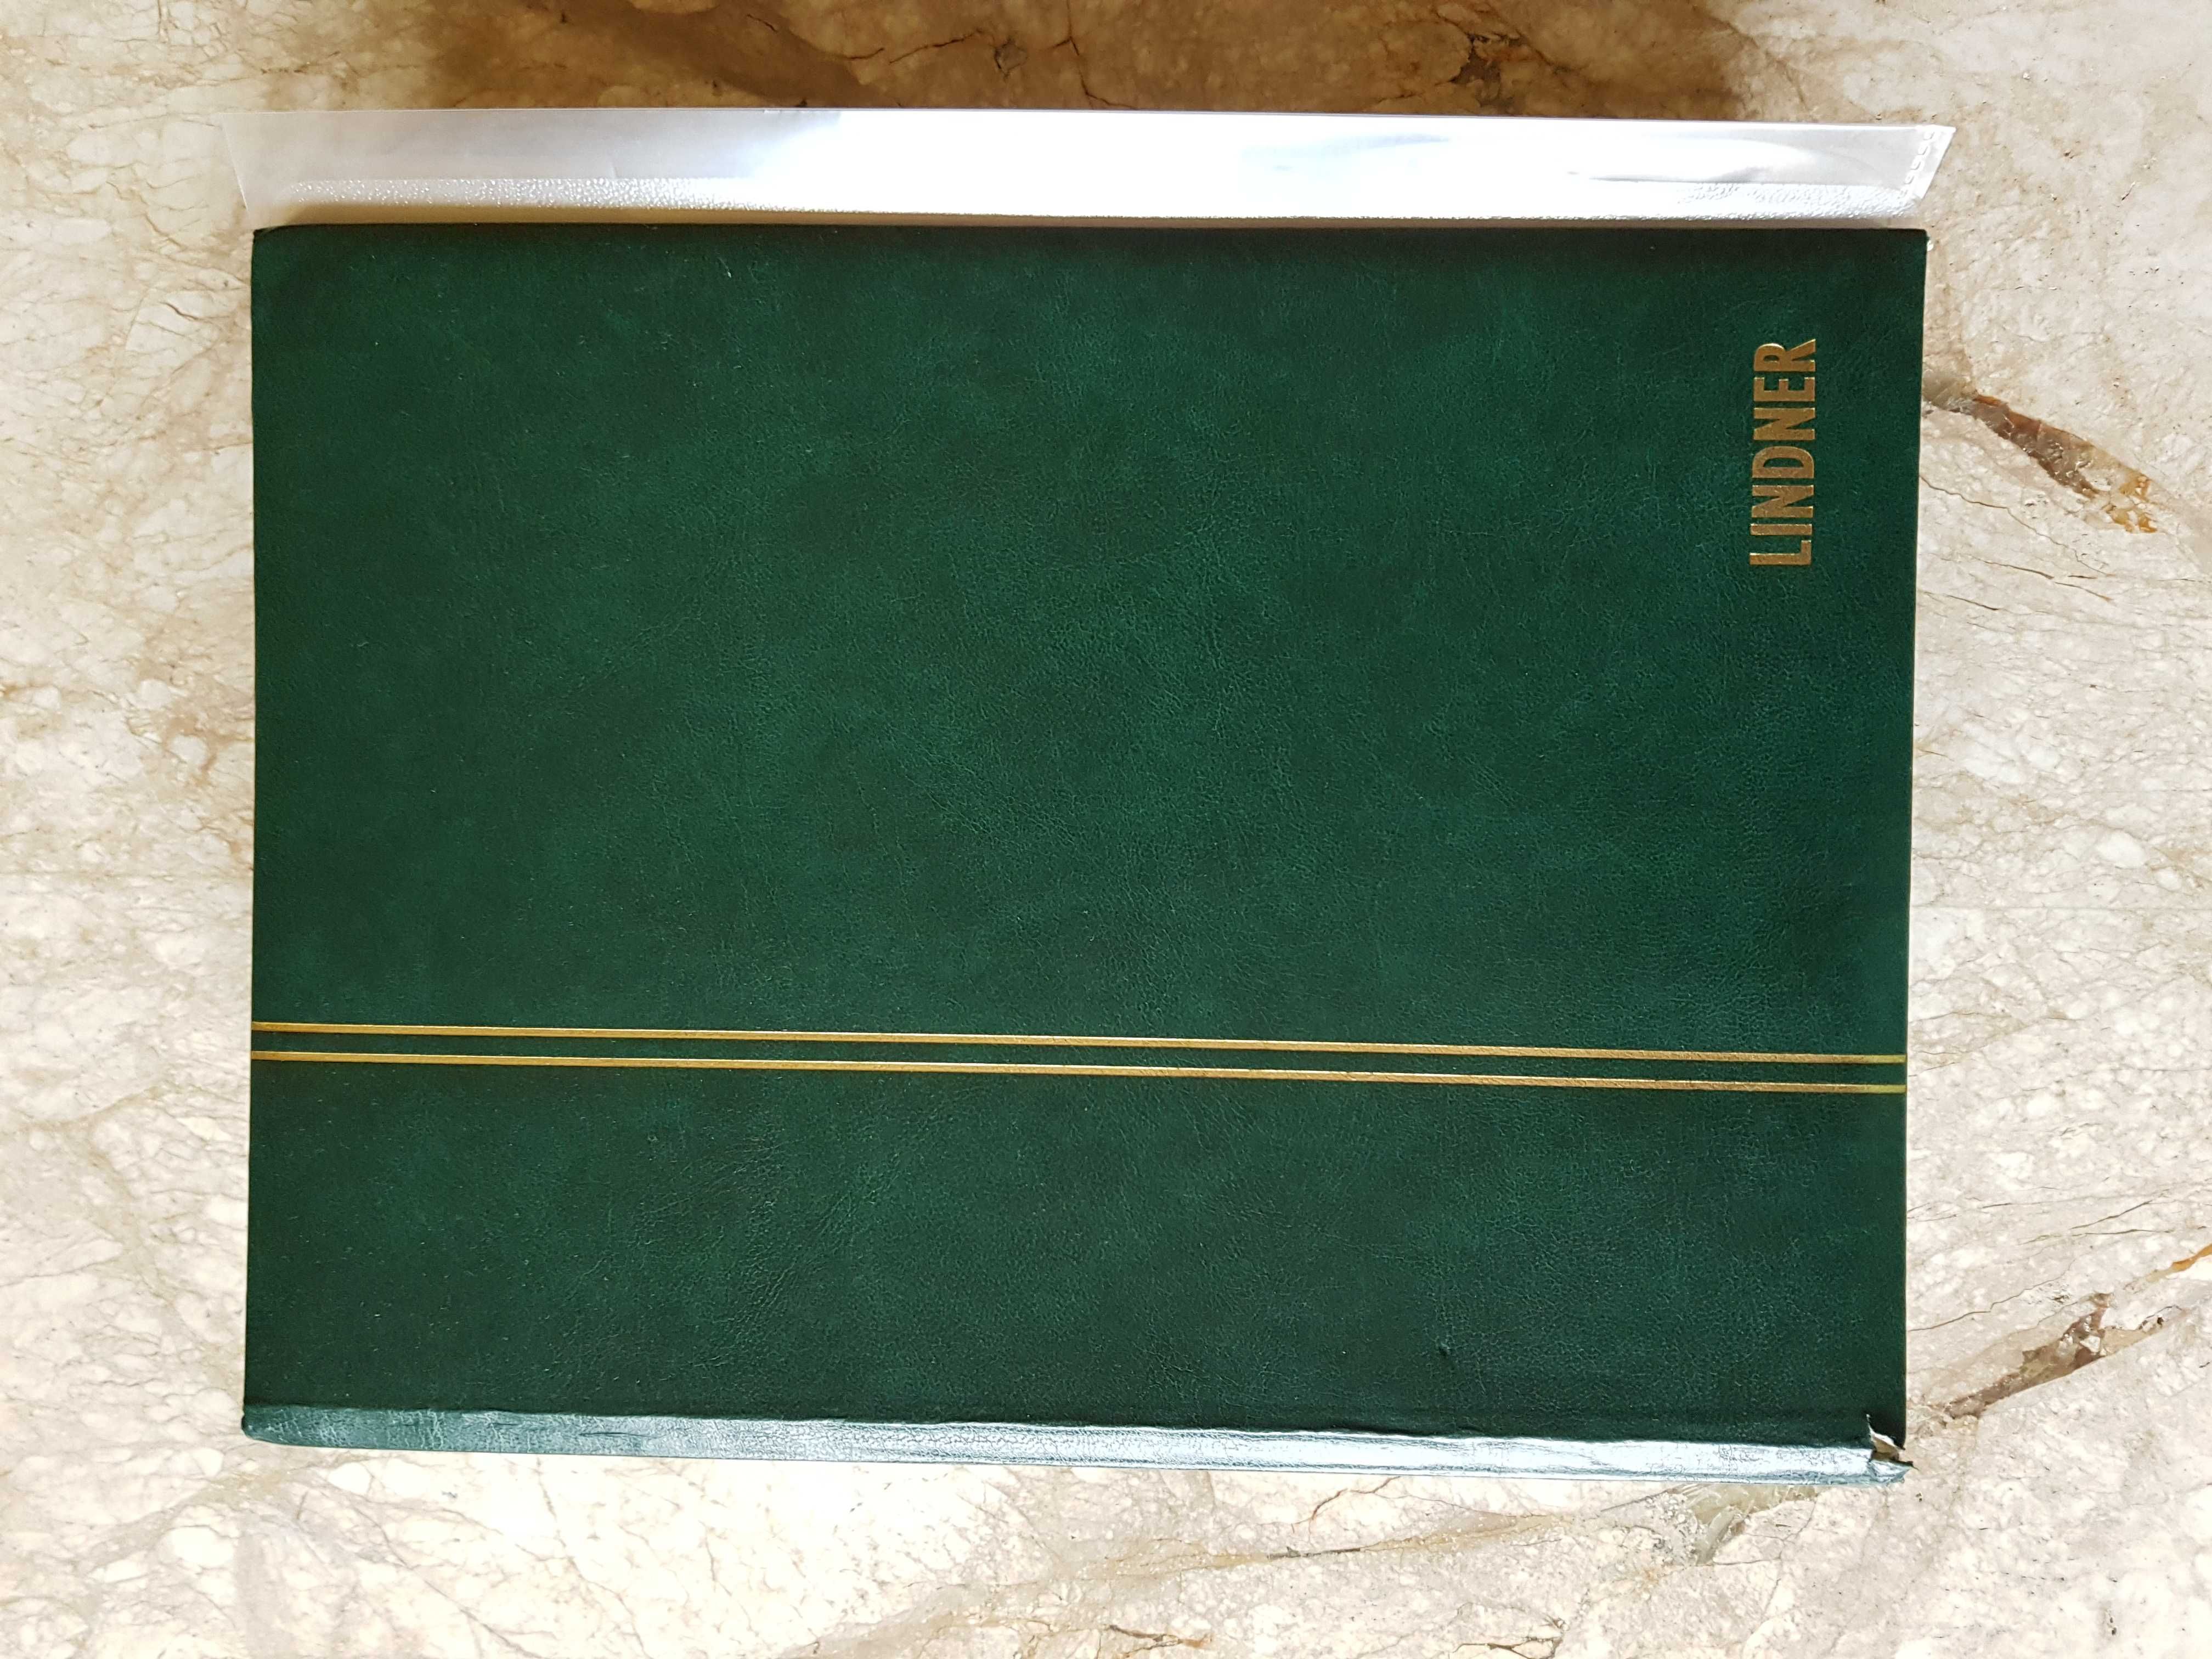 Vând sau schimb album cu TIMBRE POŞTALE VECHI aprox. din 1850s -1950s